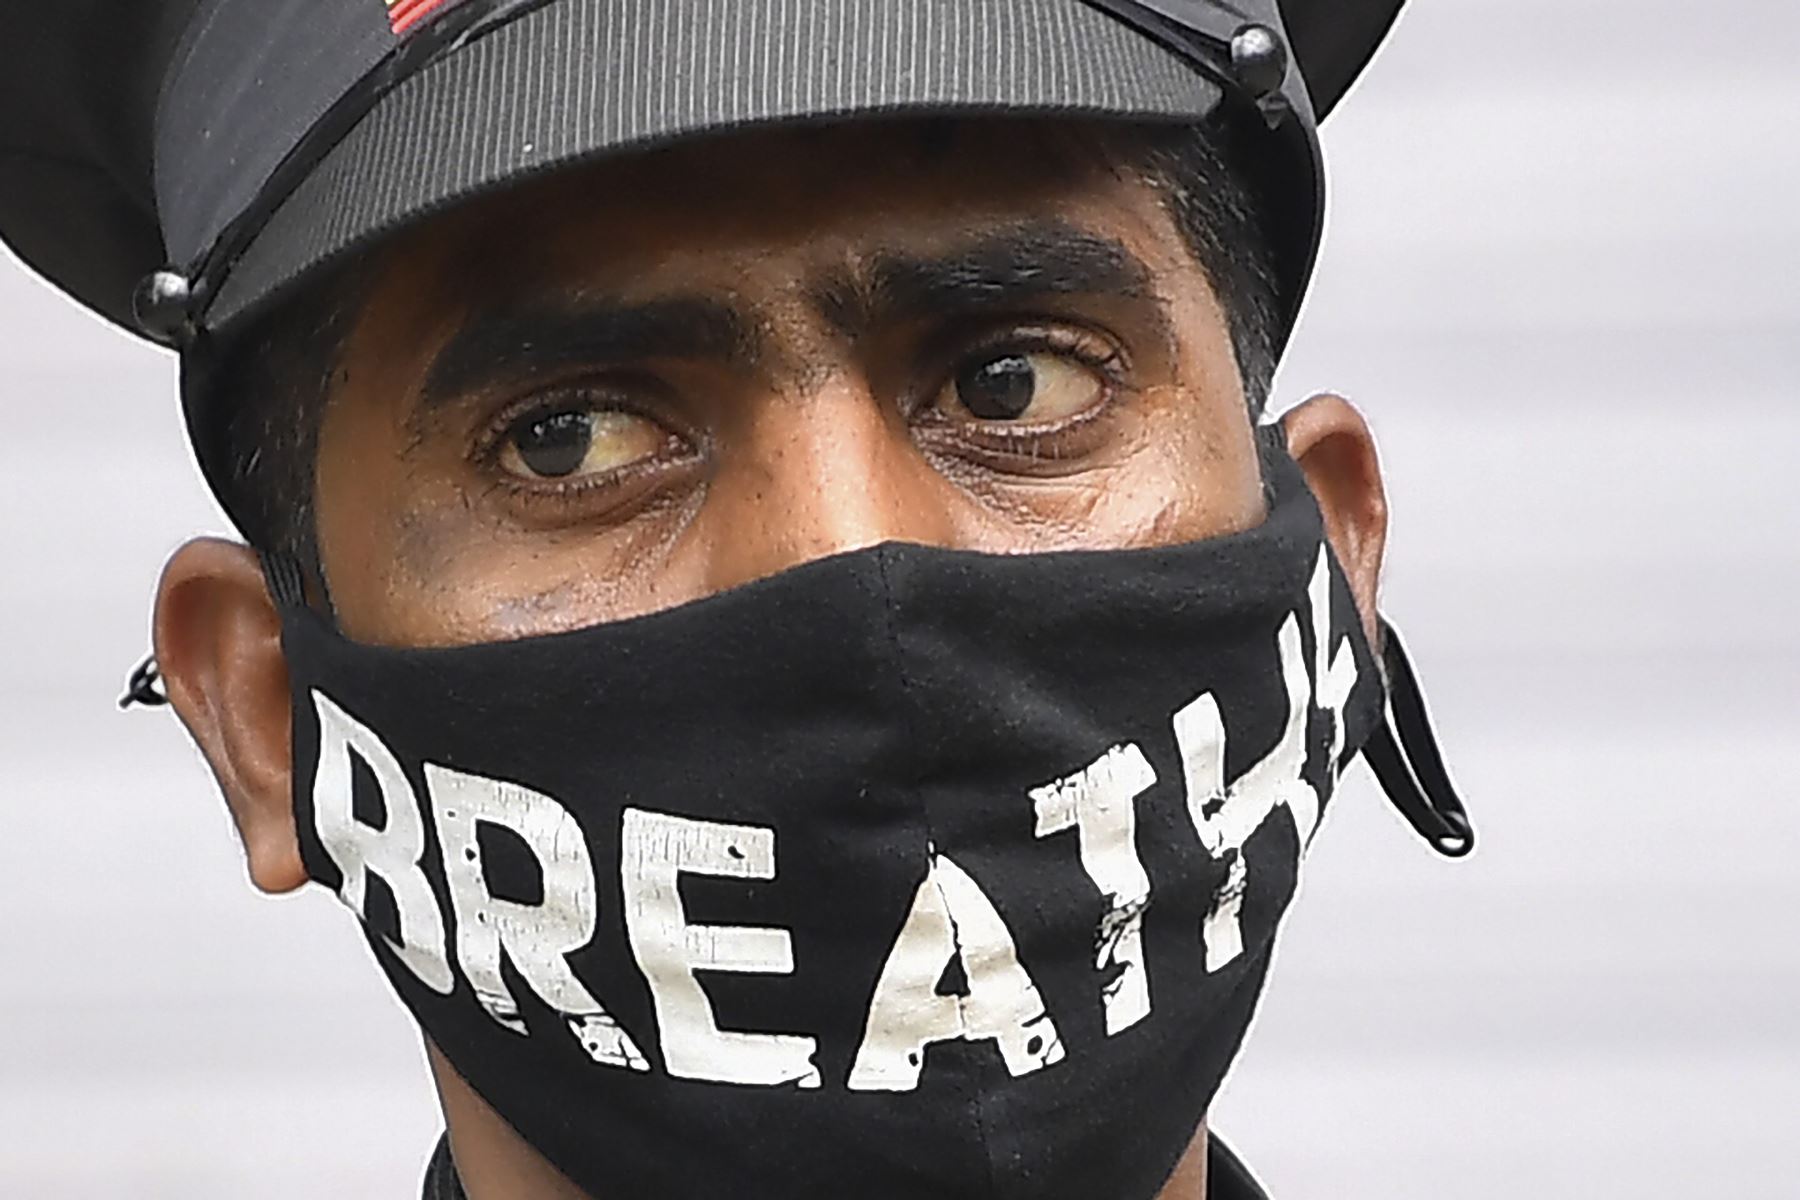 Un guardia de seguridad usa mascarilla como medida preventiva ante el coronavirus Covid-19, en Mumbai. Foto: AFP